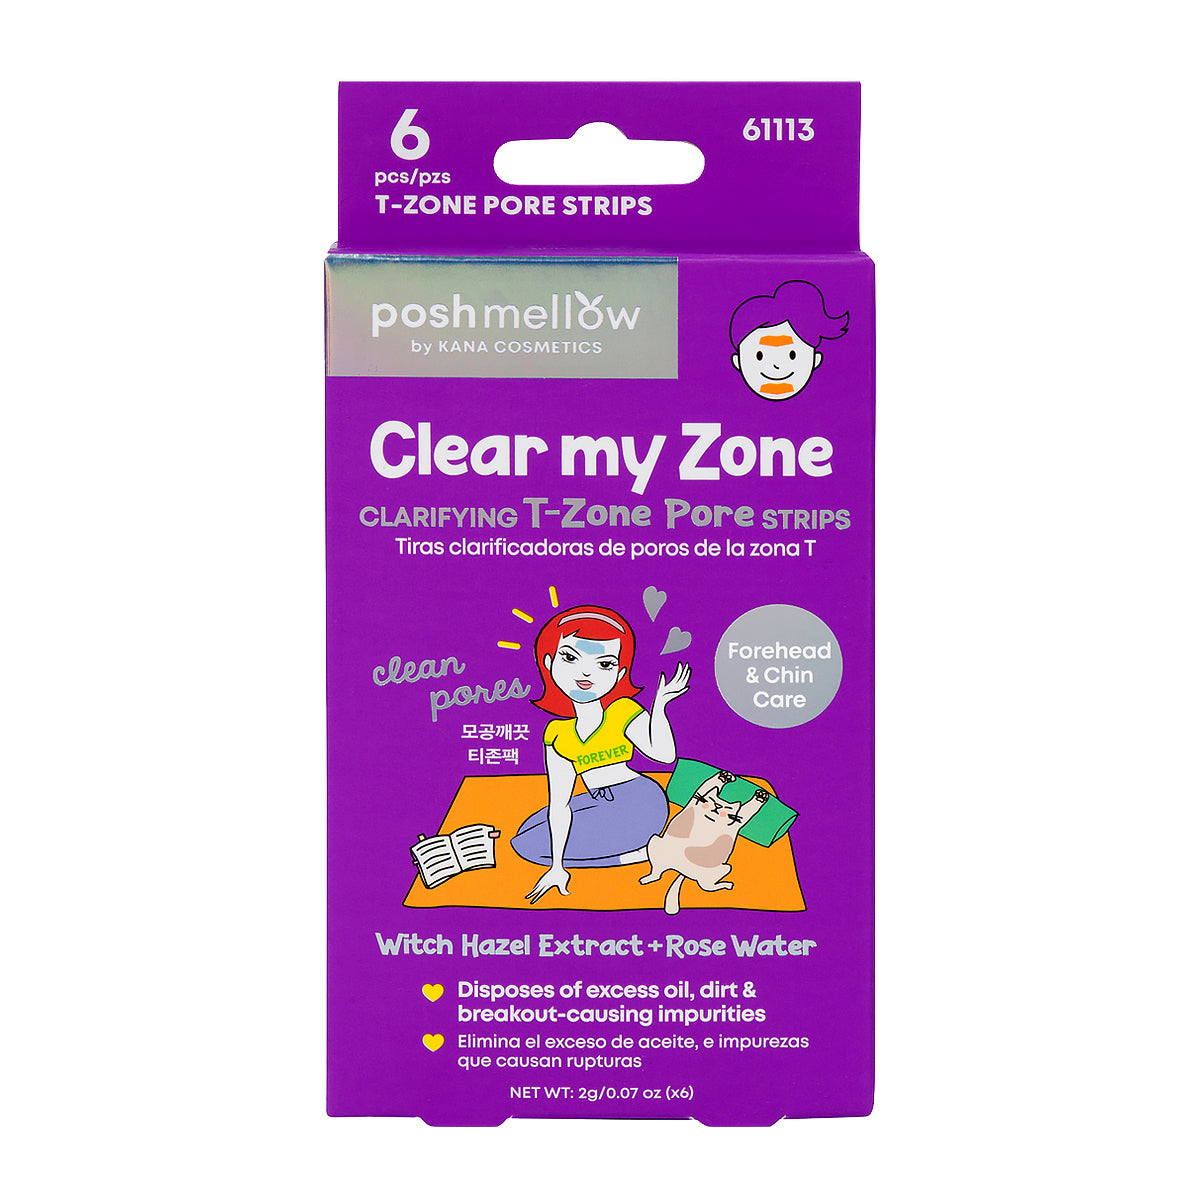 T-Zone Pore Strips (6 pks): Clear My Zone